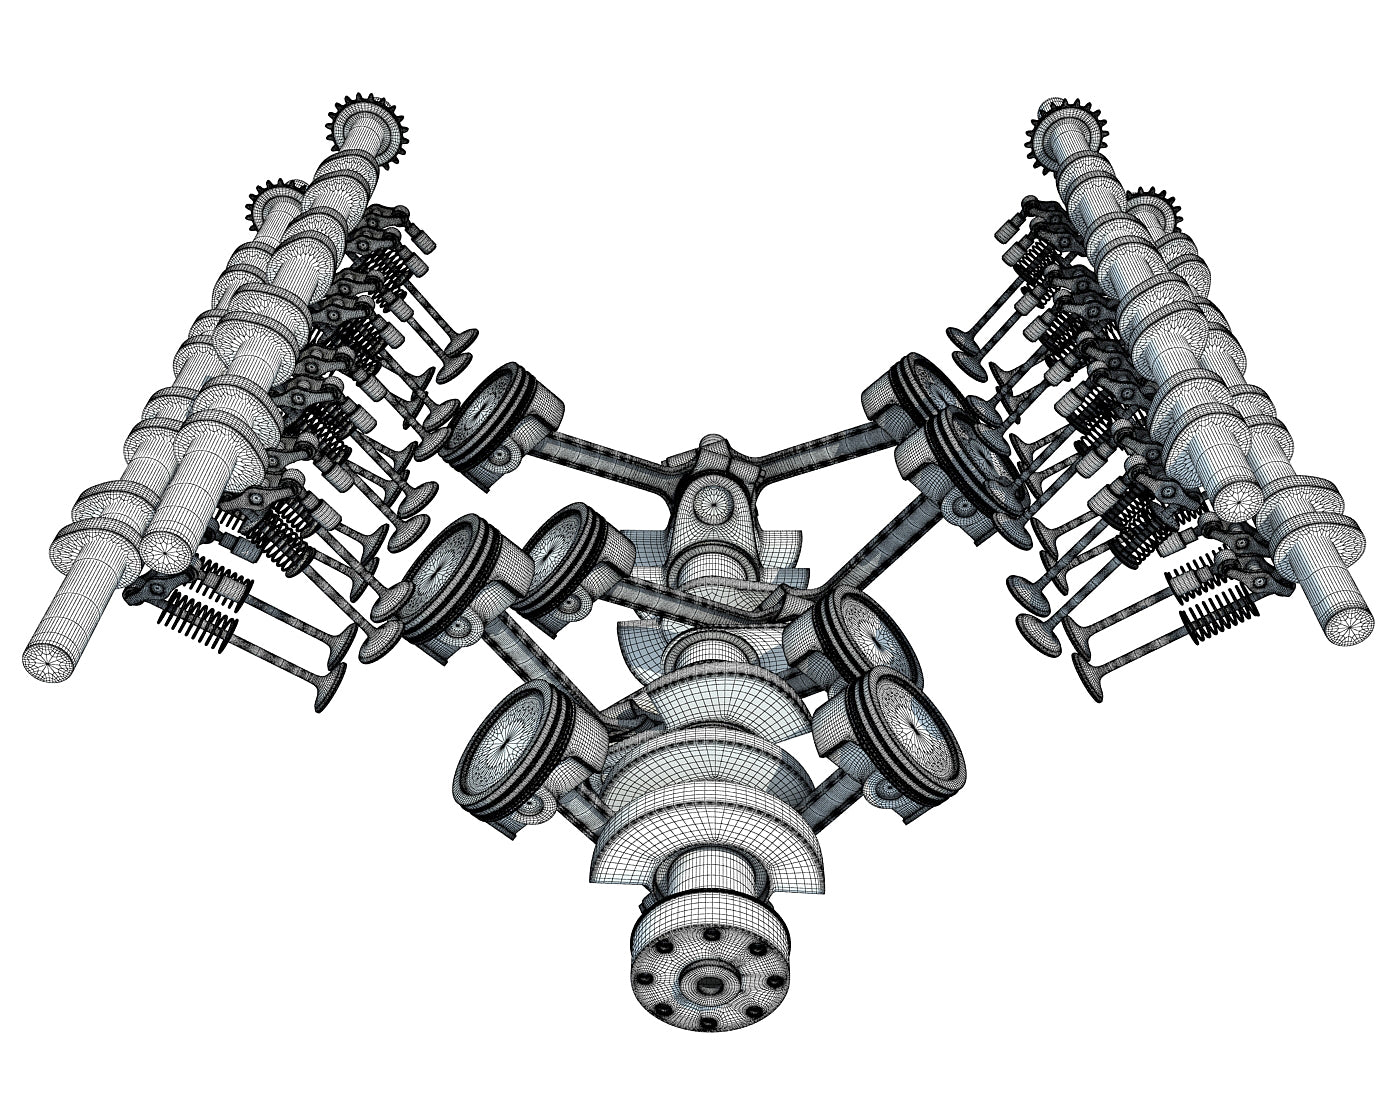 Animated V8 Engine Cylinders